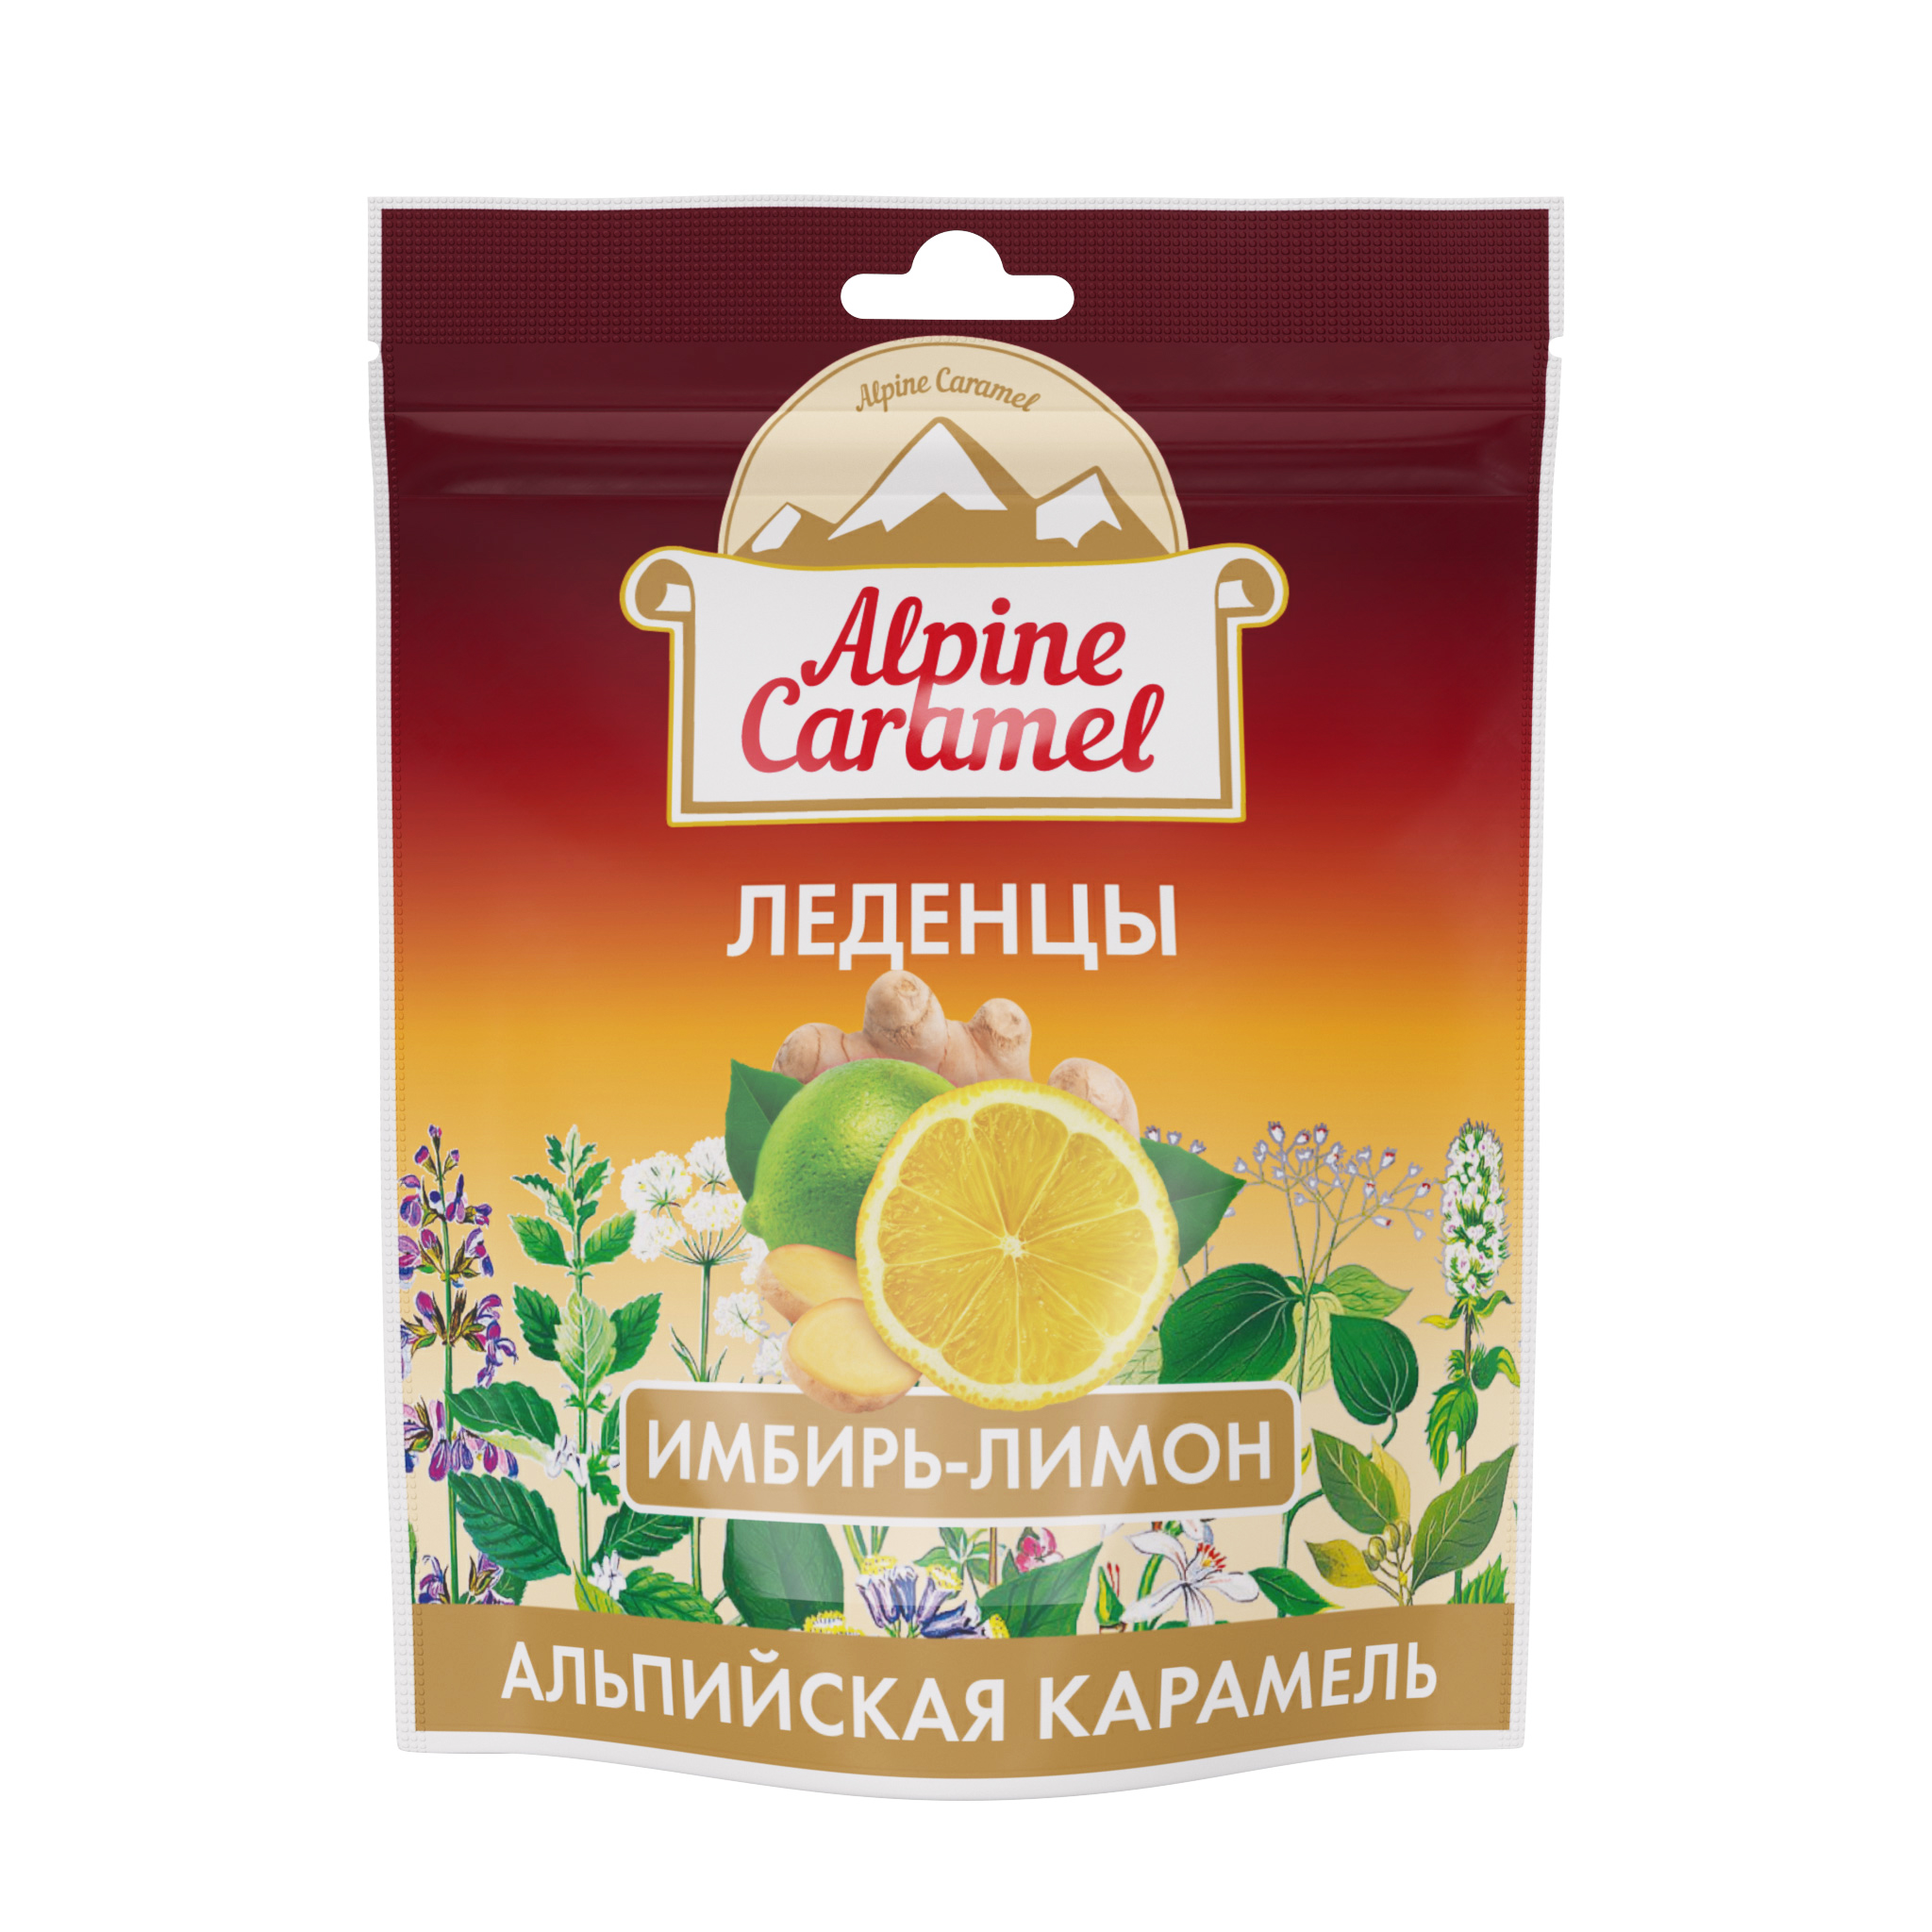 Alpine Caramel, леденцы со вкусом имбирь-лимон, 75 г альпийская карамель леденцы уп 75 г 1 шт